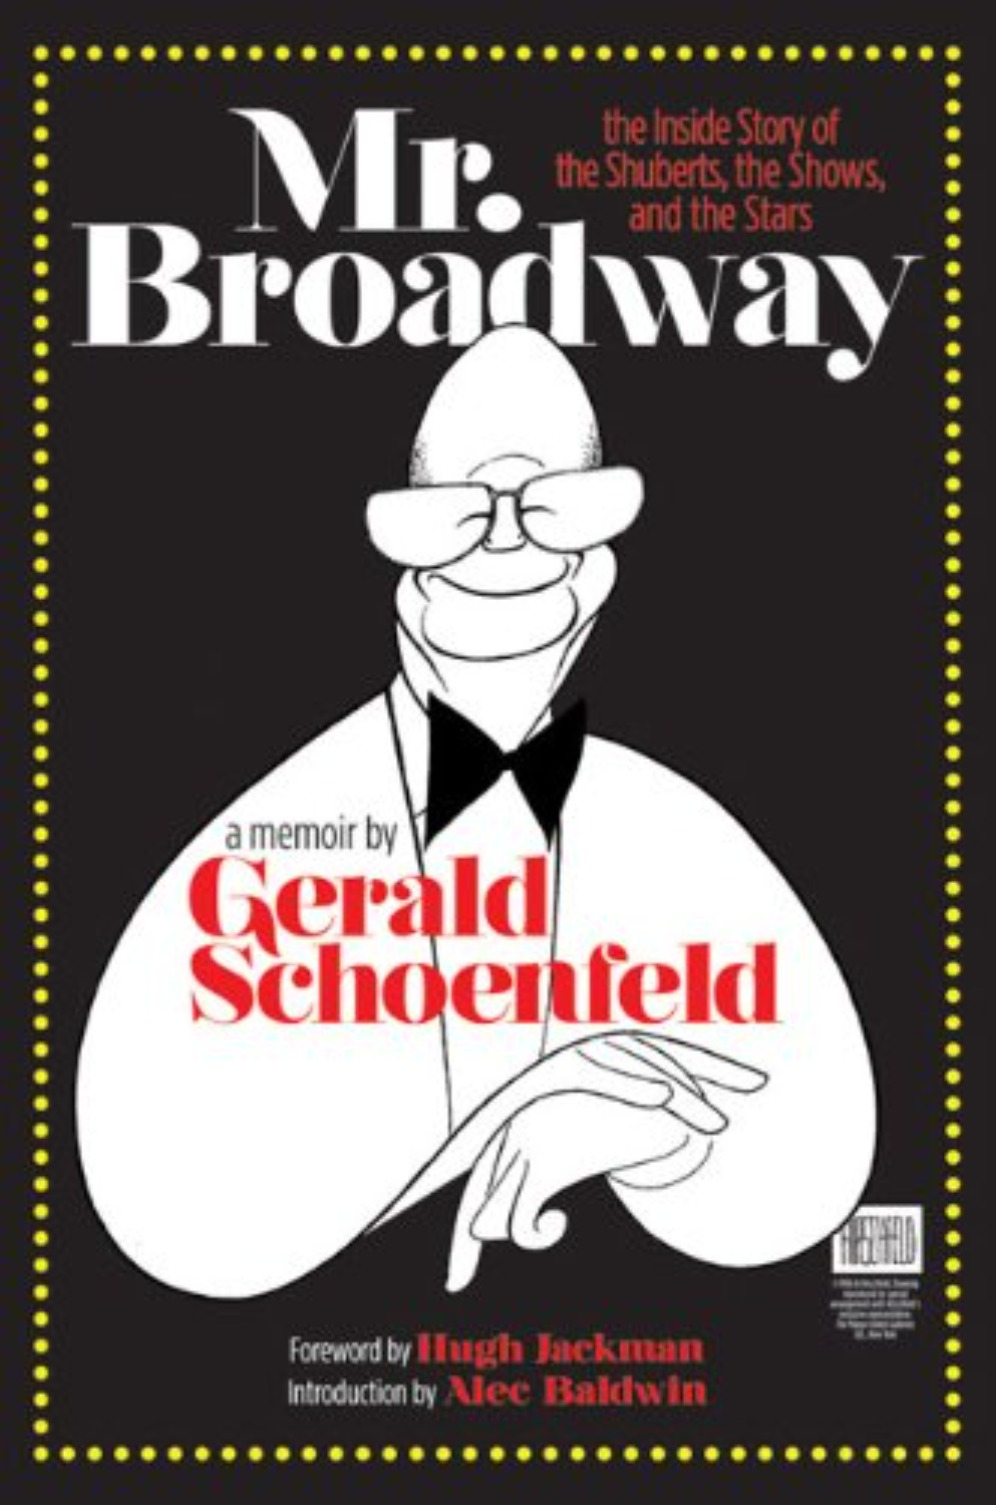 Mr. Broadway by Gerald Schoenfeld